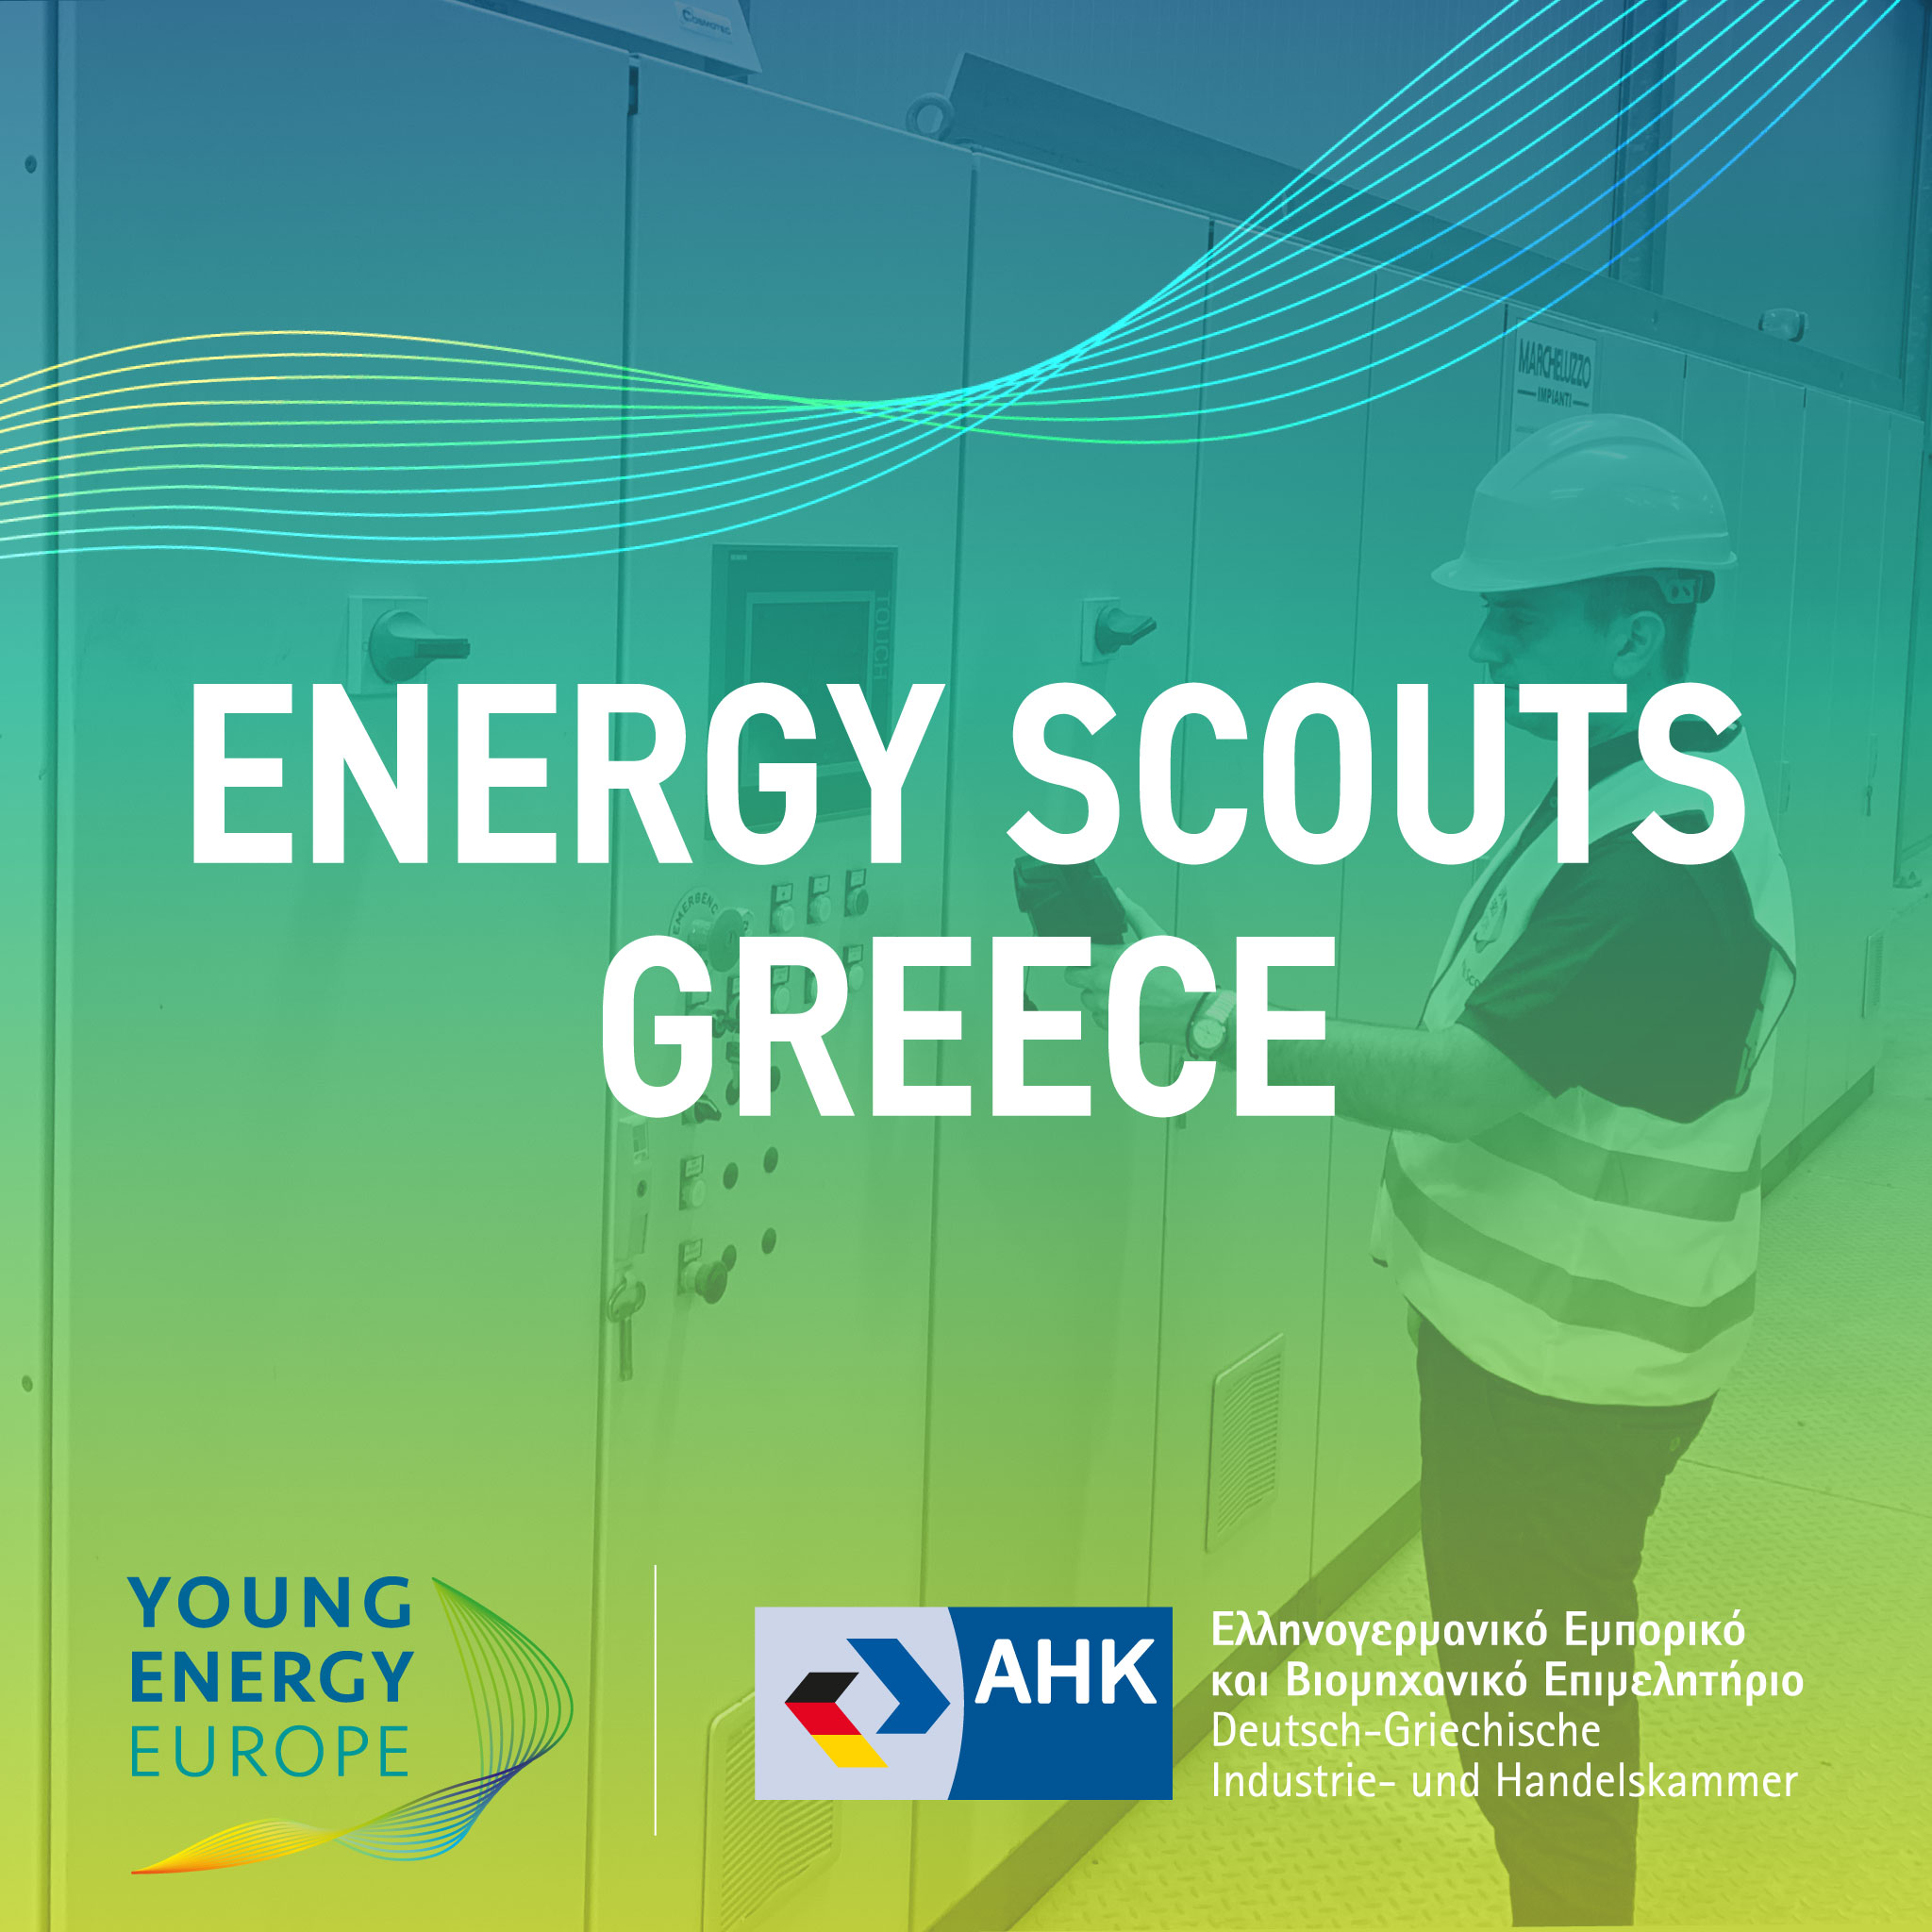 Ελληνογερμανικό Επιμελητήριο  29, 31 Μαρτίου και 4, 11 Απριλίου το σεμινάριο “Energy Scouts”, για την εξοικονόμηση ενέργειας